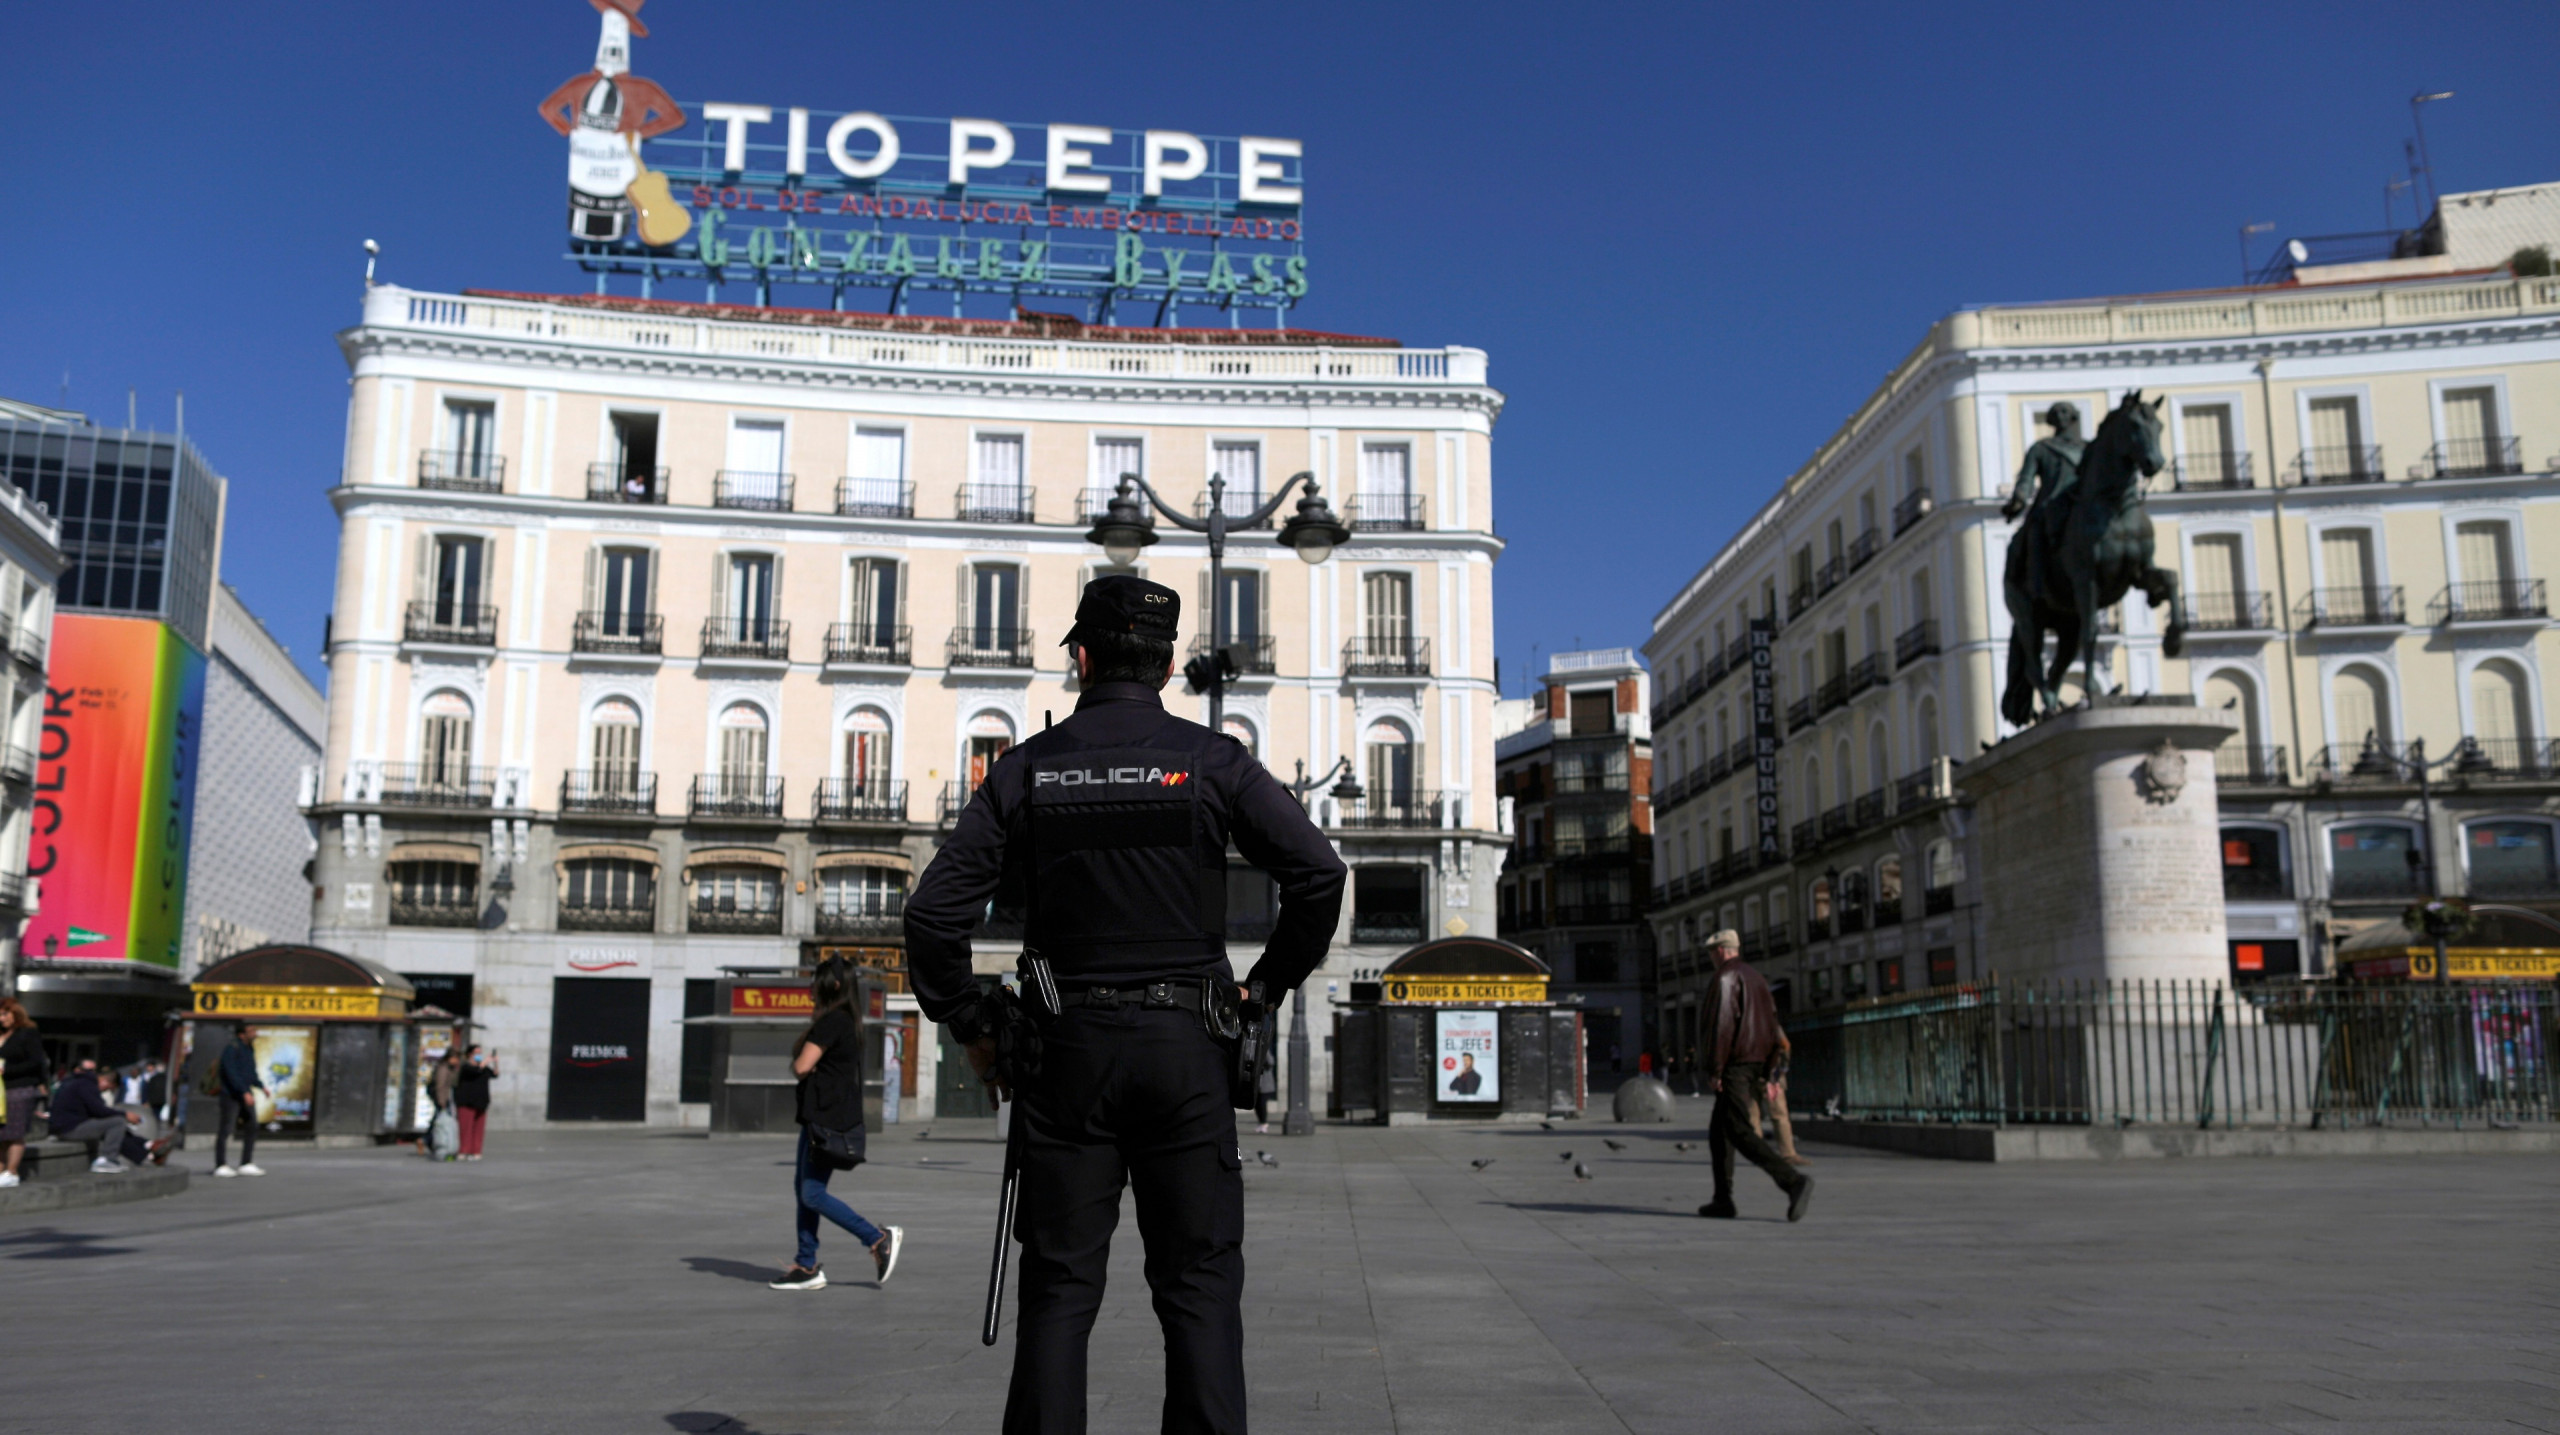 La piazza "Puerta del sol" di Madrid